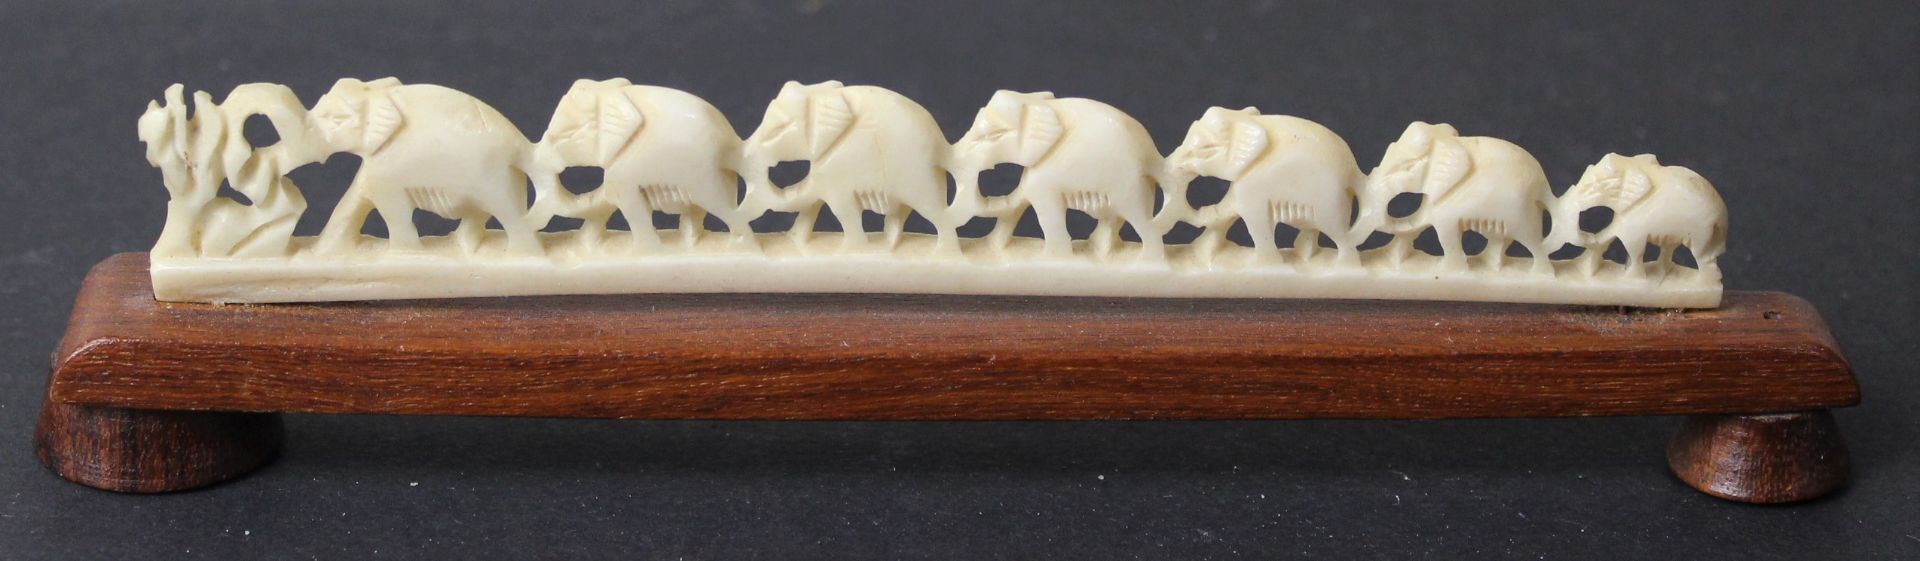 Elefantenreihe auf Holzsockel, wohl Elfenbein